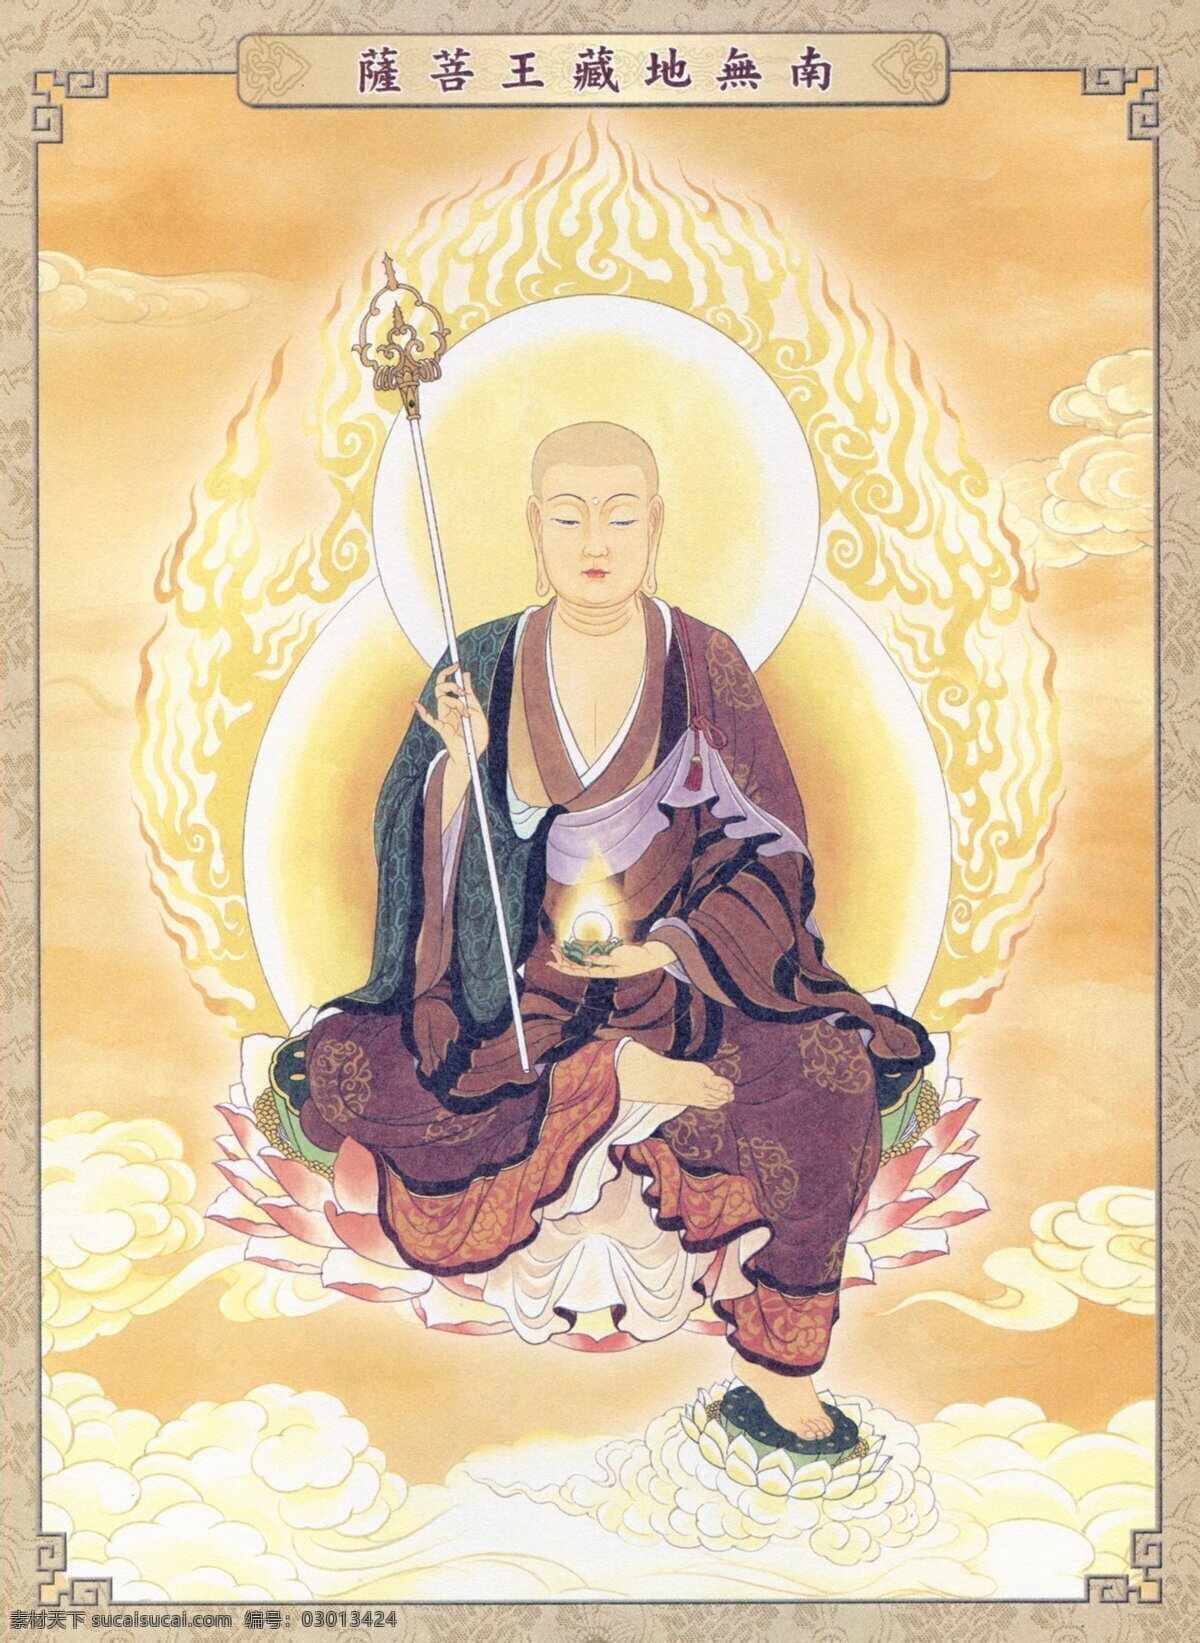 地藏王菩萨 地藏菩萨 菩萨 地藏 宗教信仰 宗教艺术 汉传佛教 文化艺术